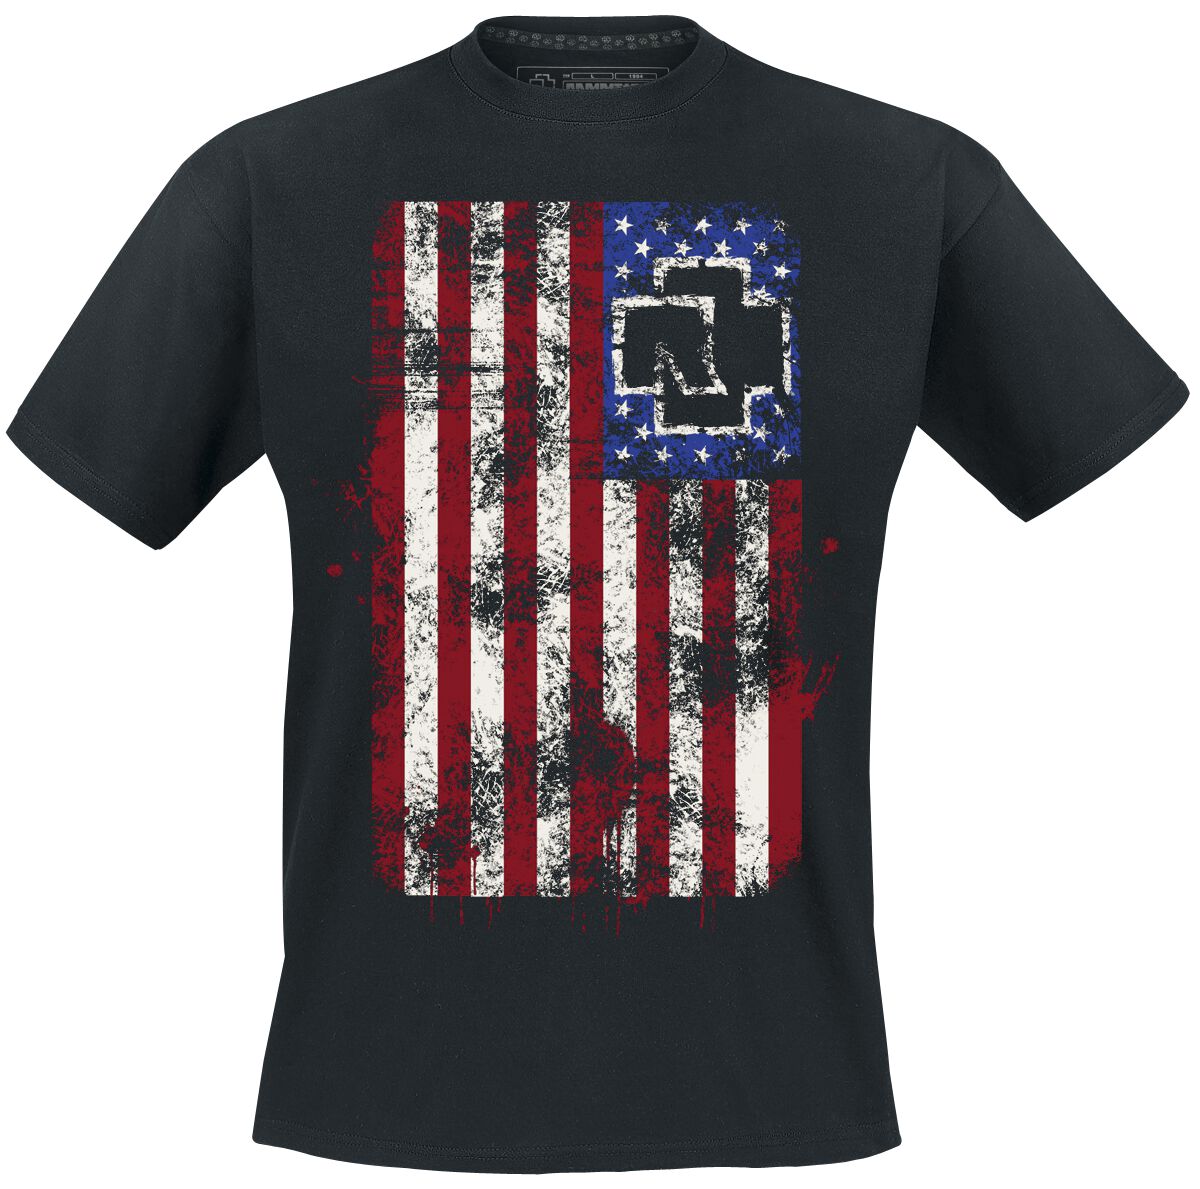 Rammstein T-Shirt - Amerika - XXL - für Männer - Größe XXL - schwarz  - Lizenziertes Merchandise!